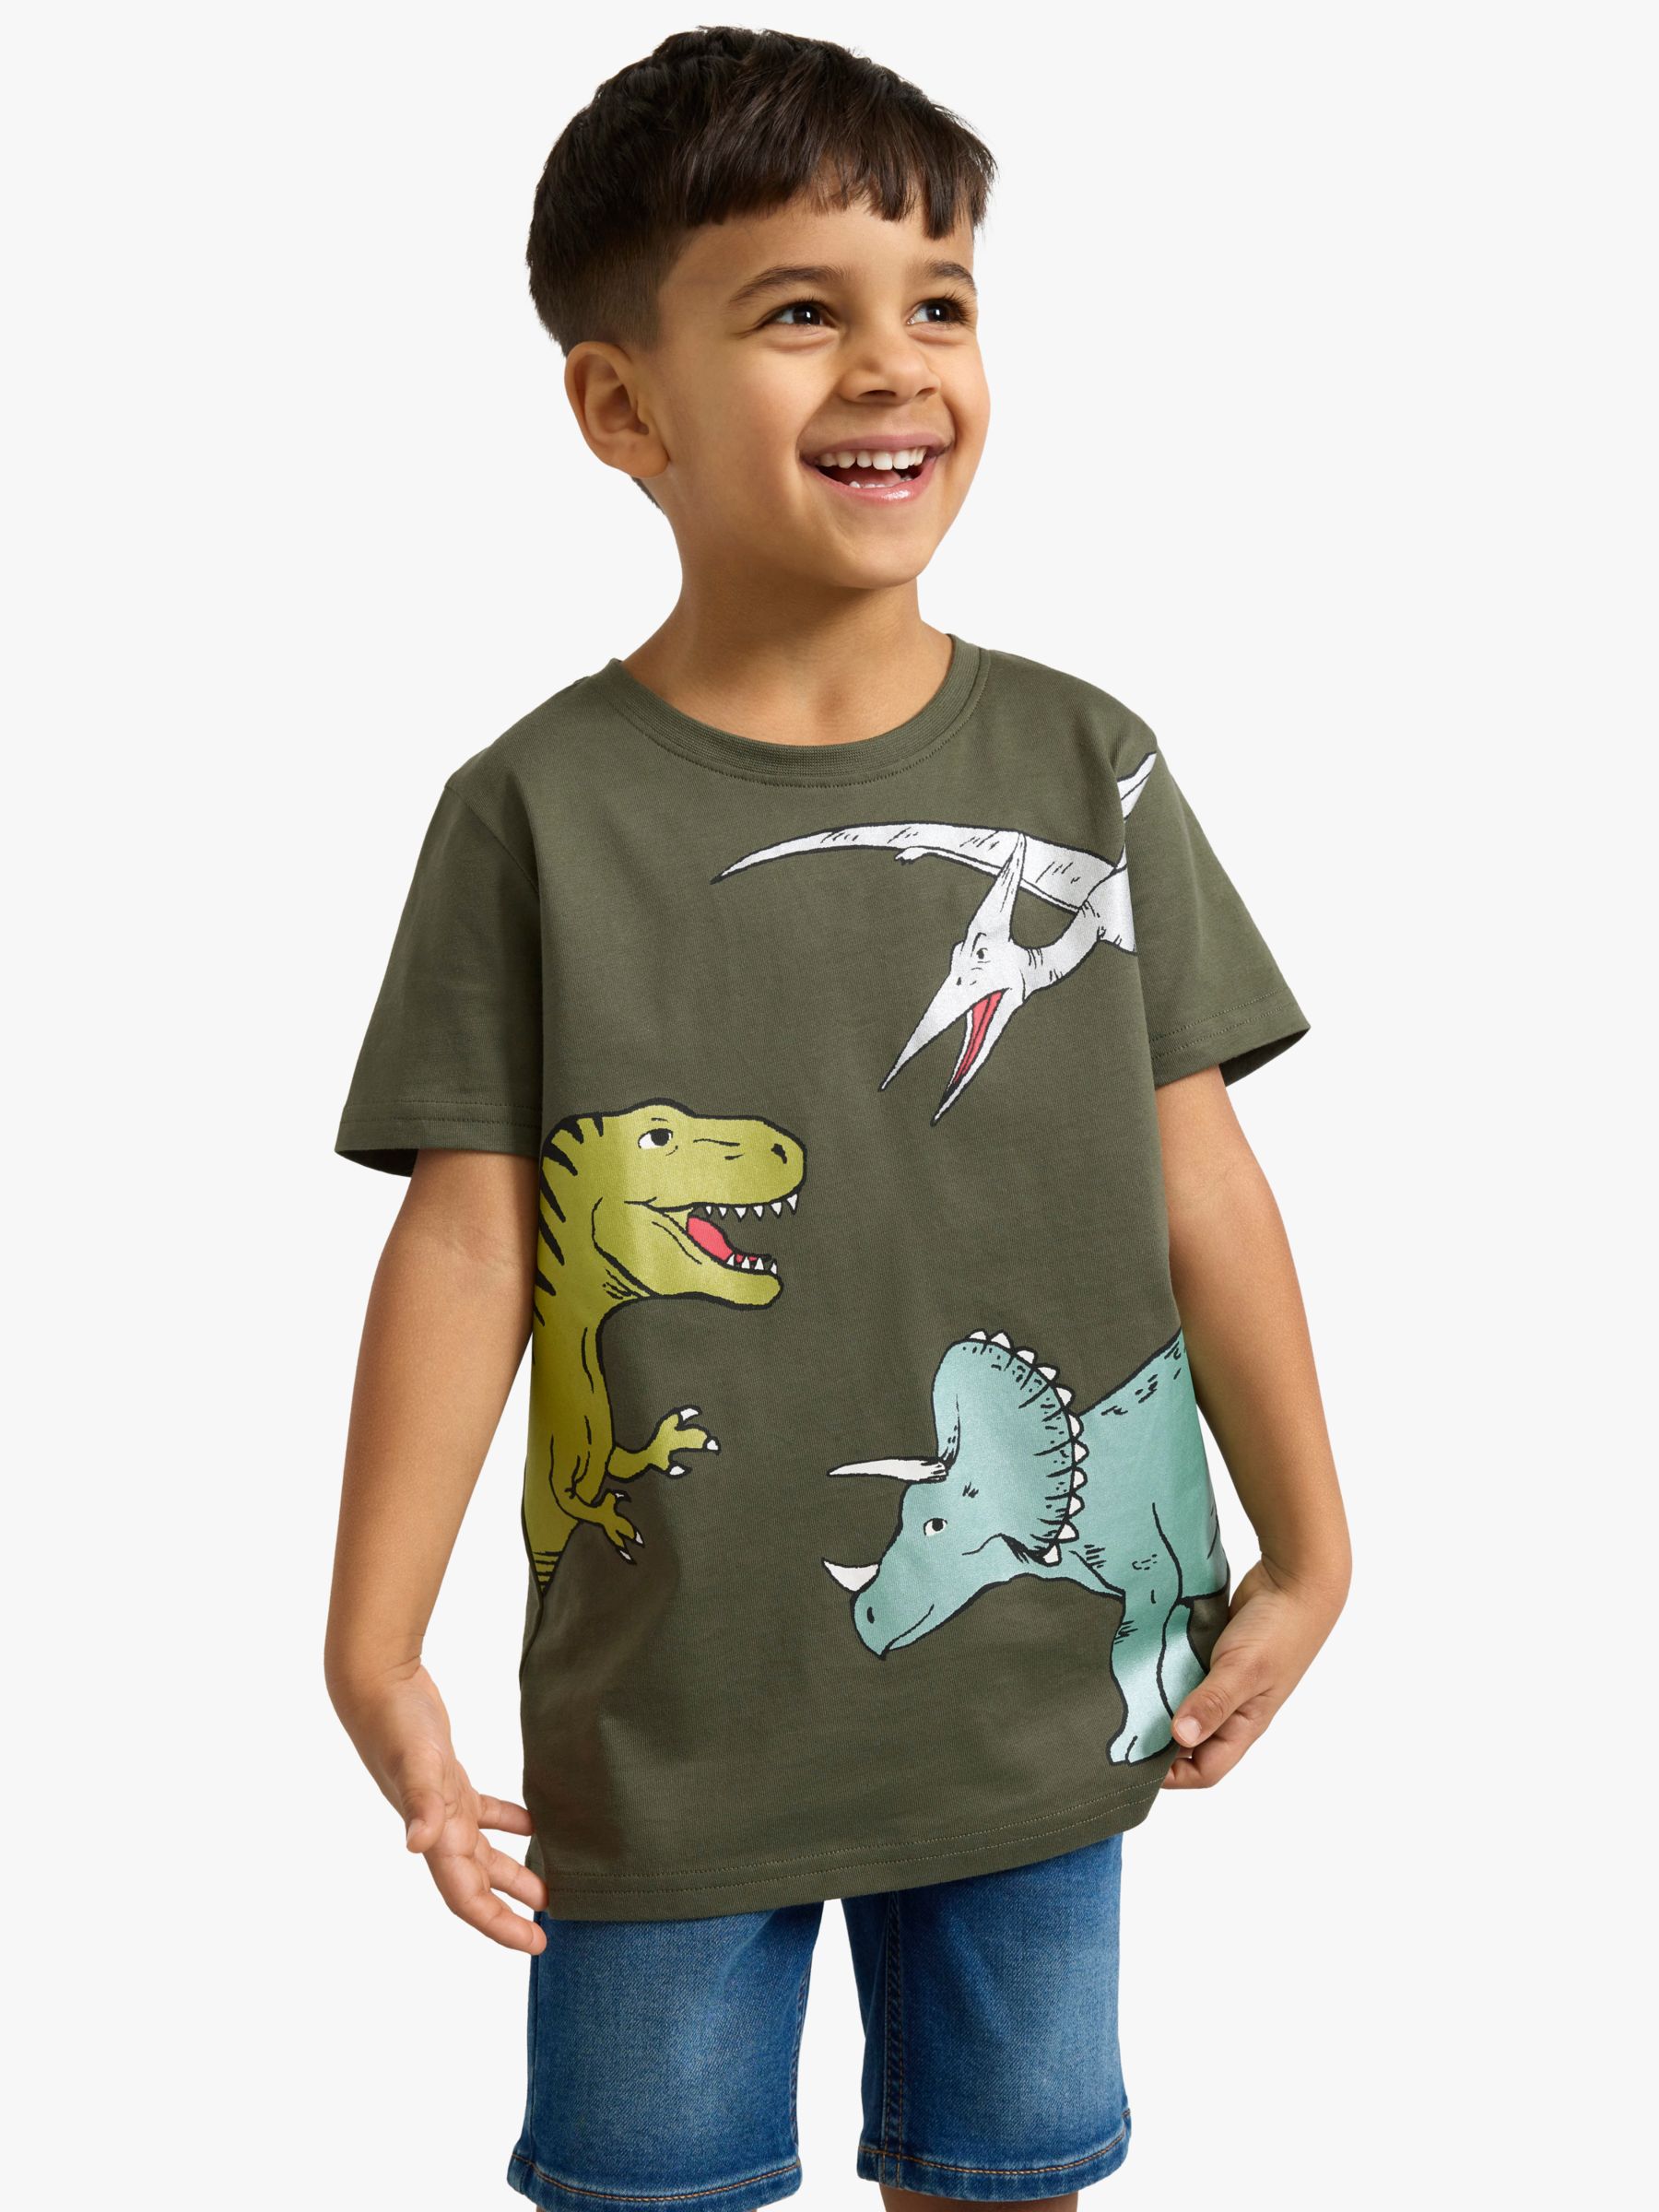 Lindex Kids' Short Sleeve Dinosaur T-Shirt, Dark Dusty Khaki, 2-4 years